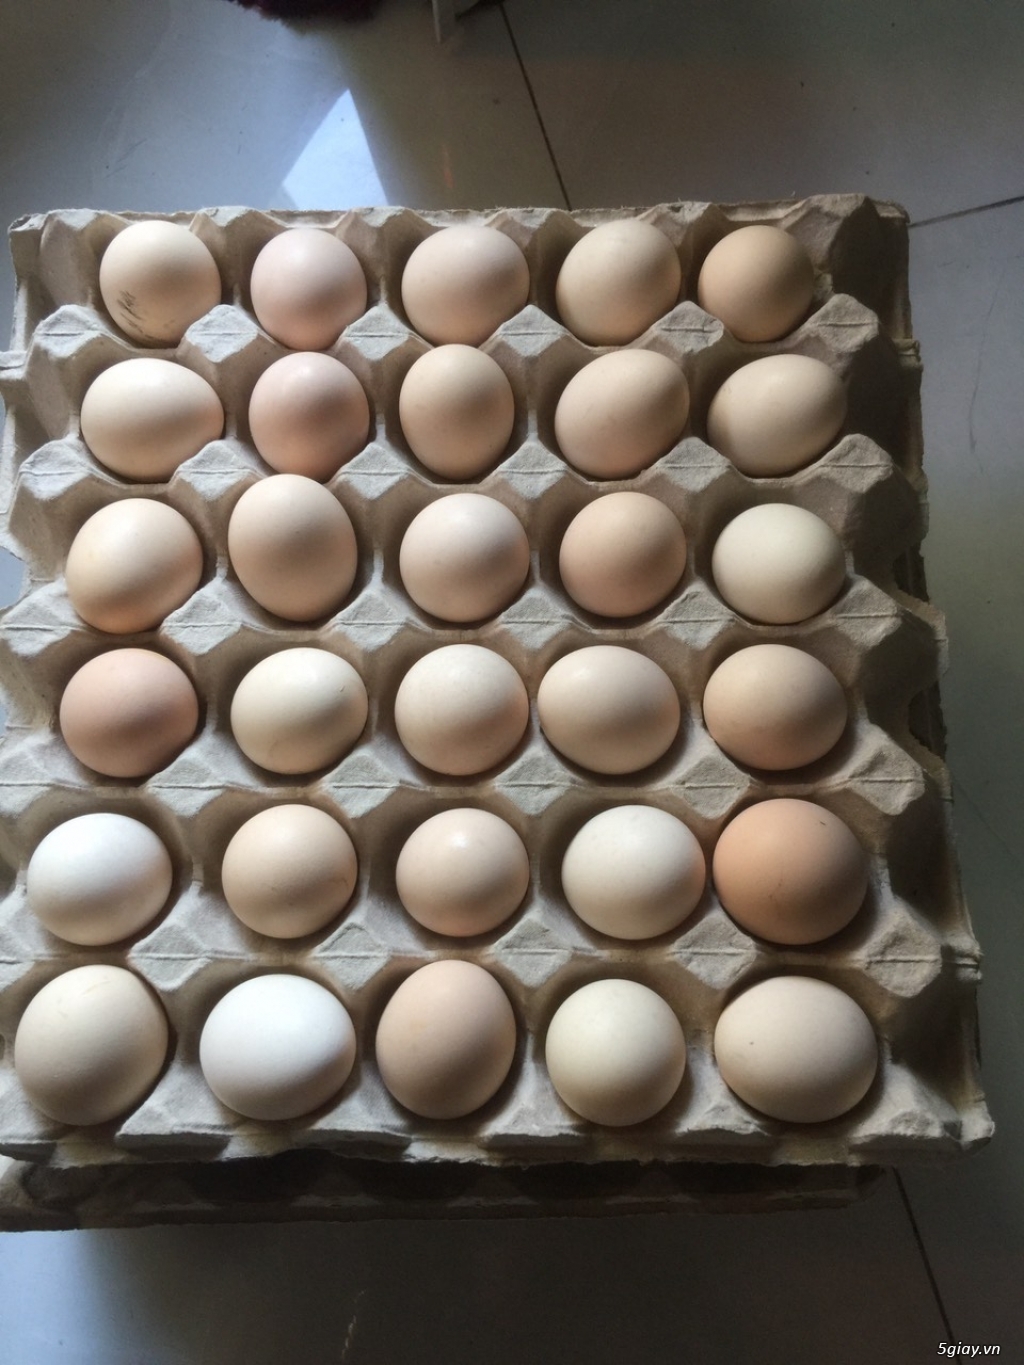 trang trại cần tìm đai lý, nhà phân phối trứng gà ác trên toàn quốc